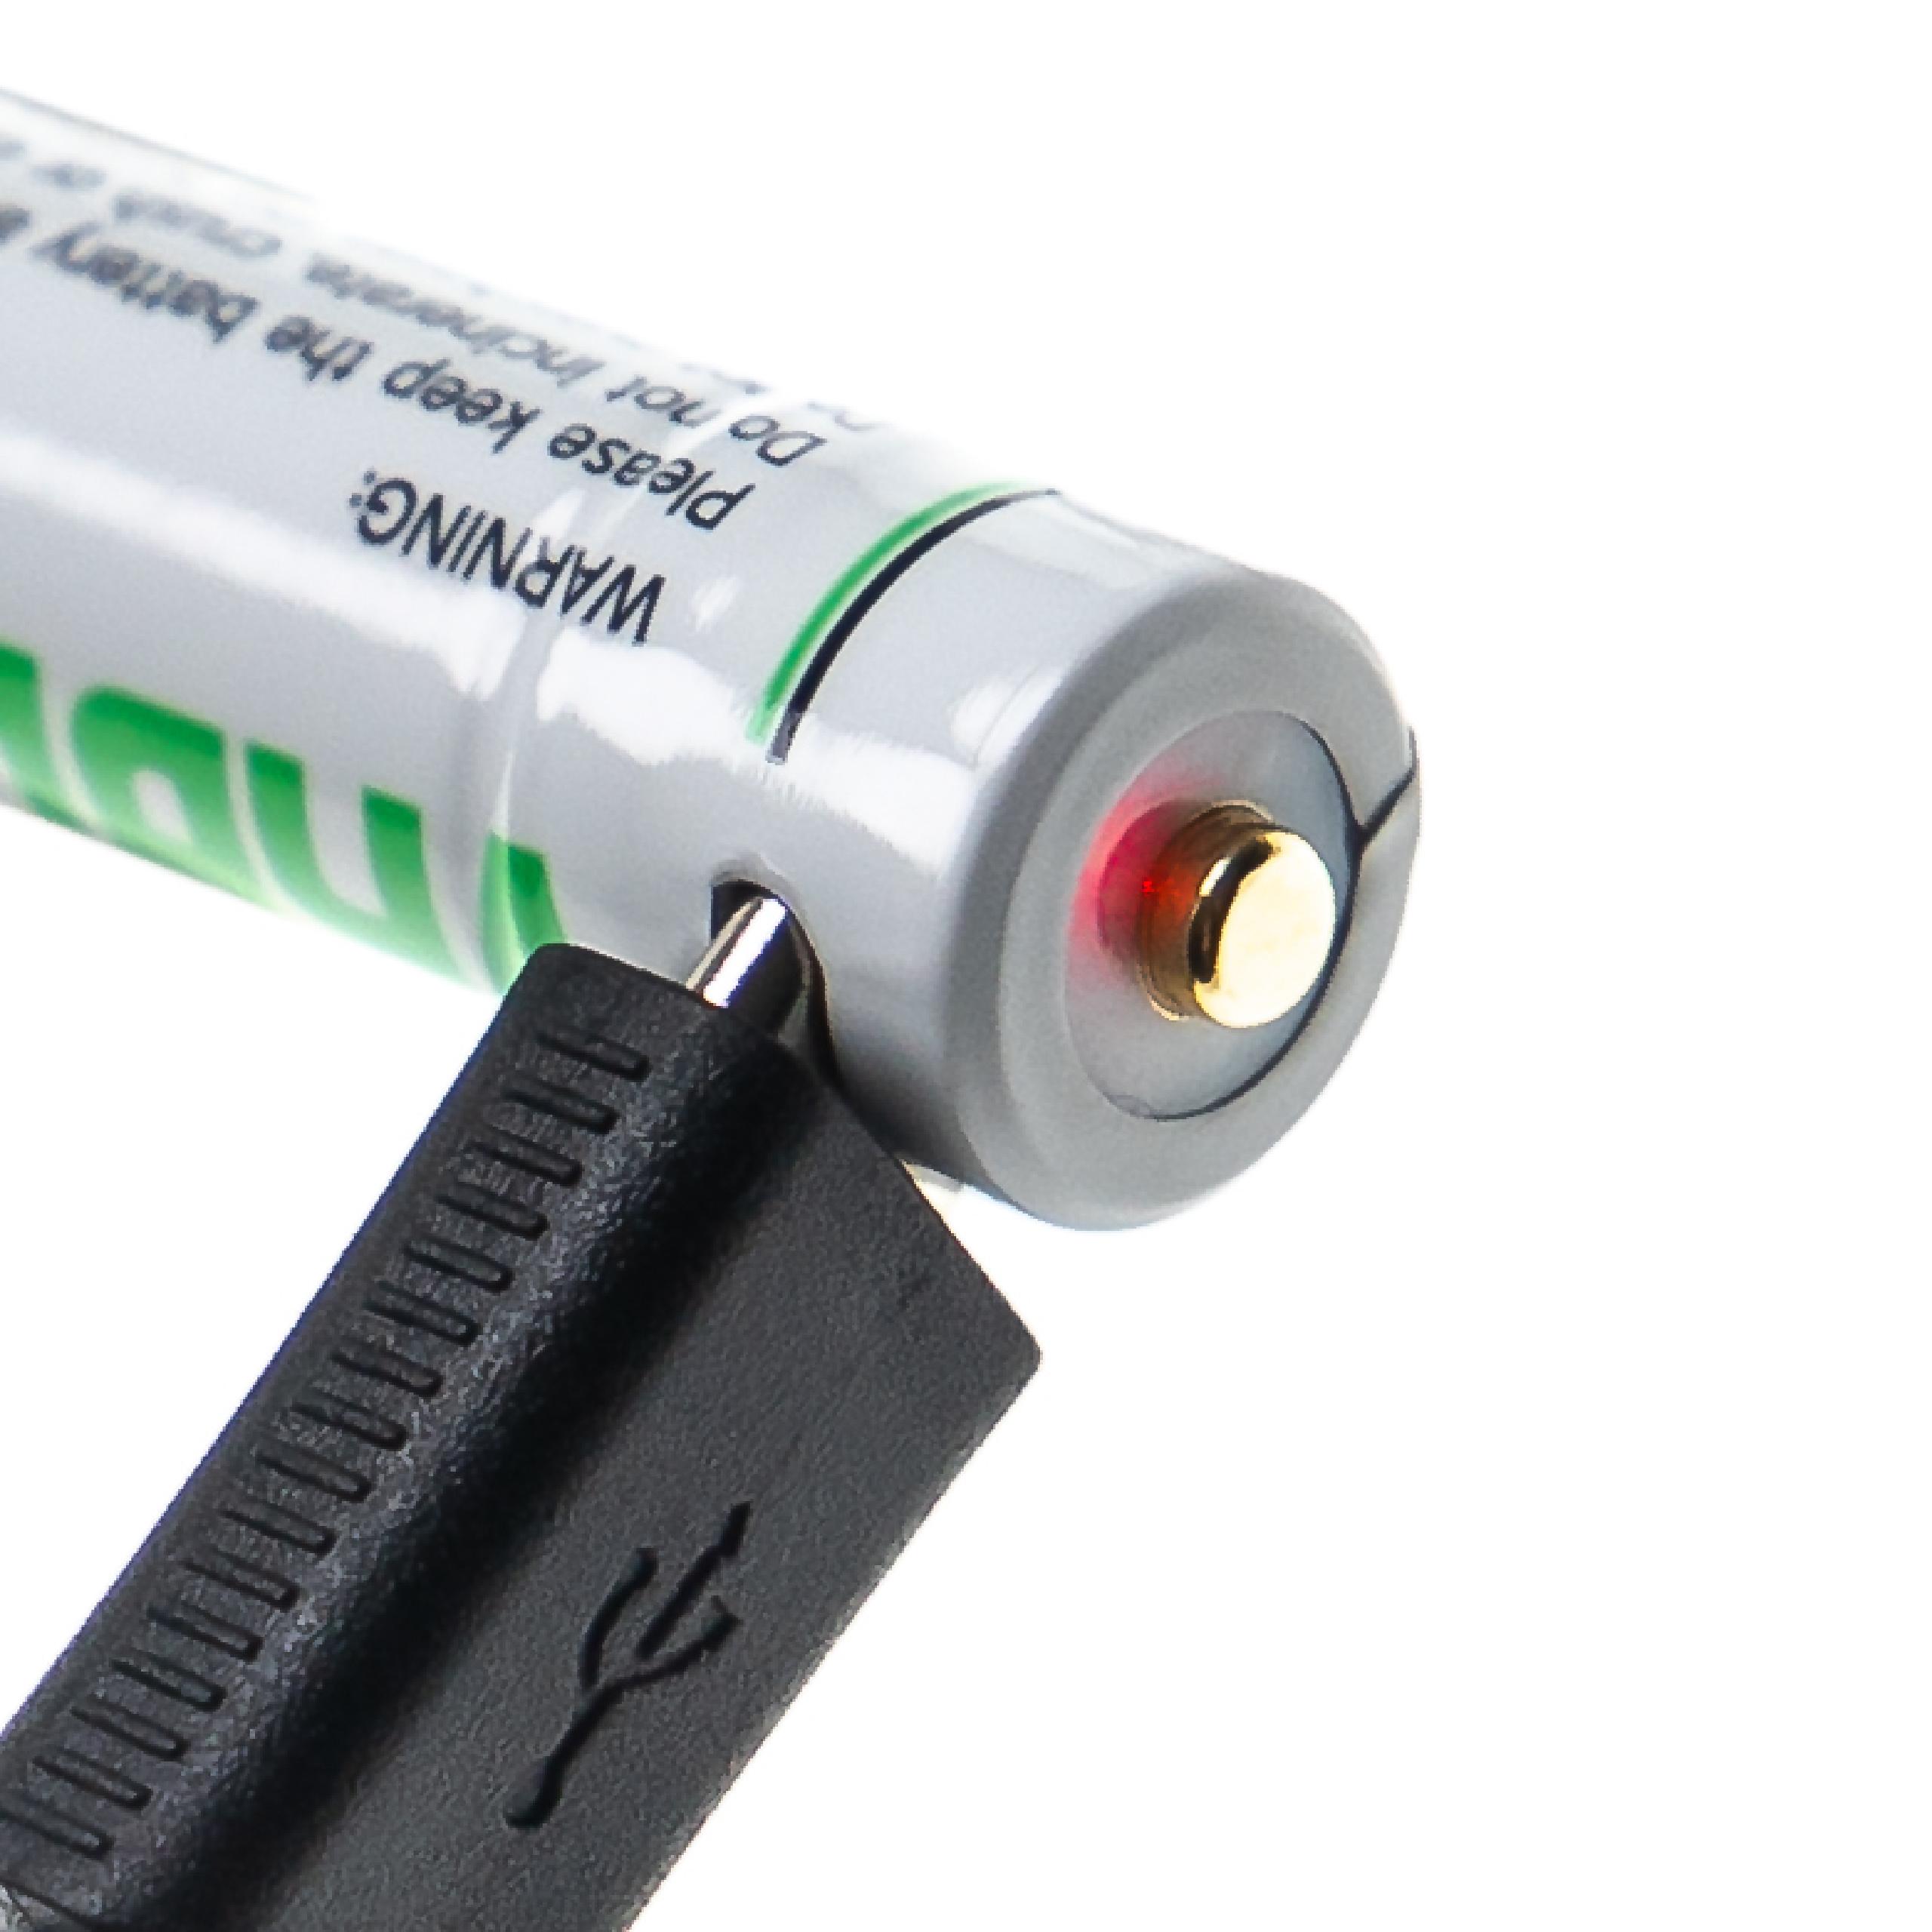 Batteria ricaricabile AAA mini stilo (micro) - Con presa micro USB, 280 mAh, 1,5 V, Li-Ion